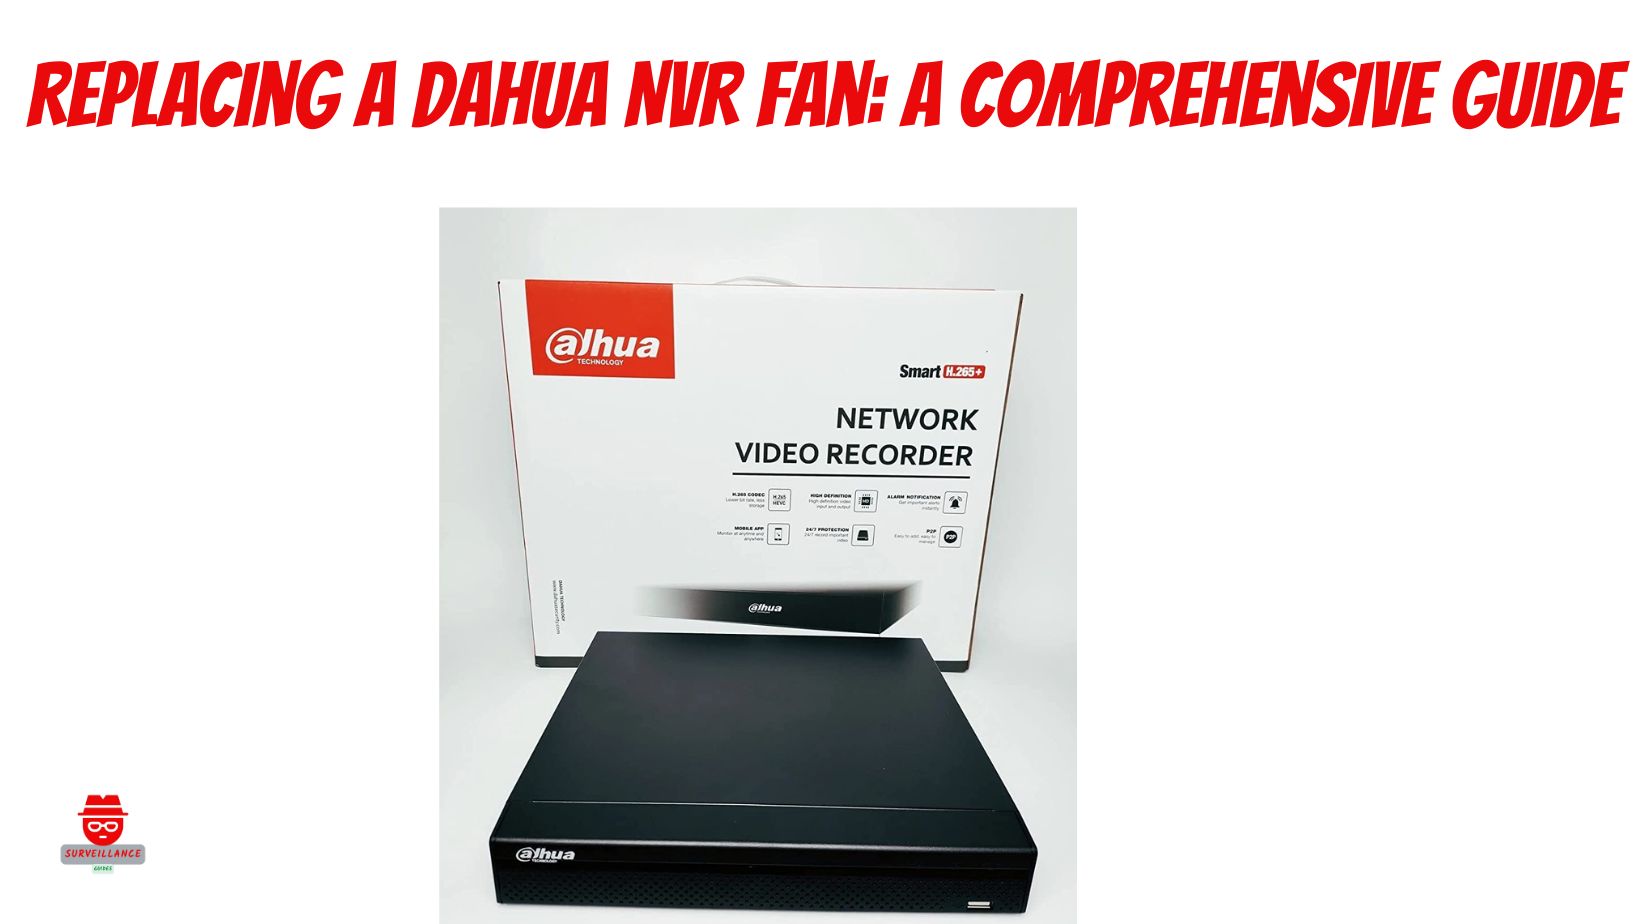 Dahua NVR fan replacement